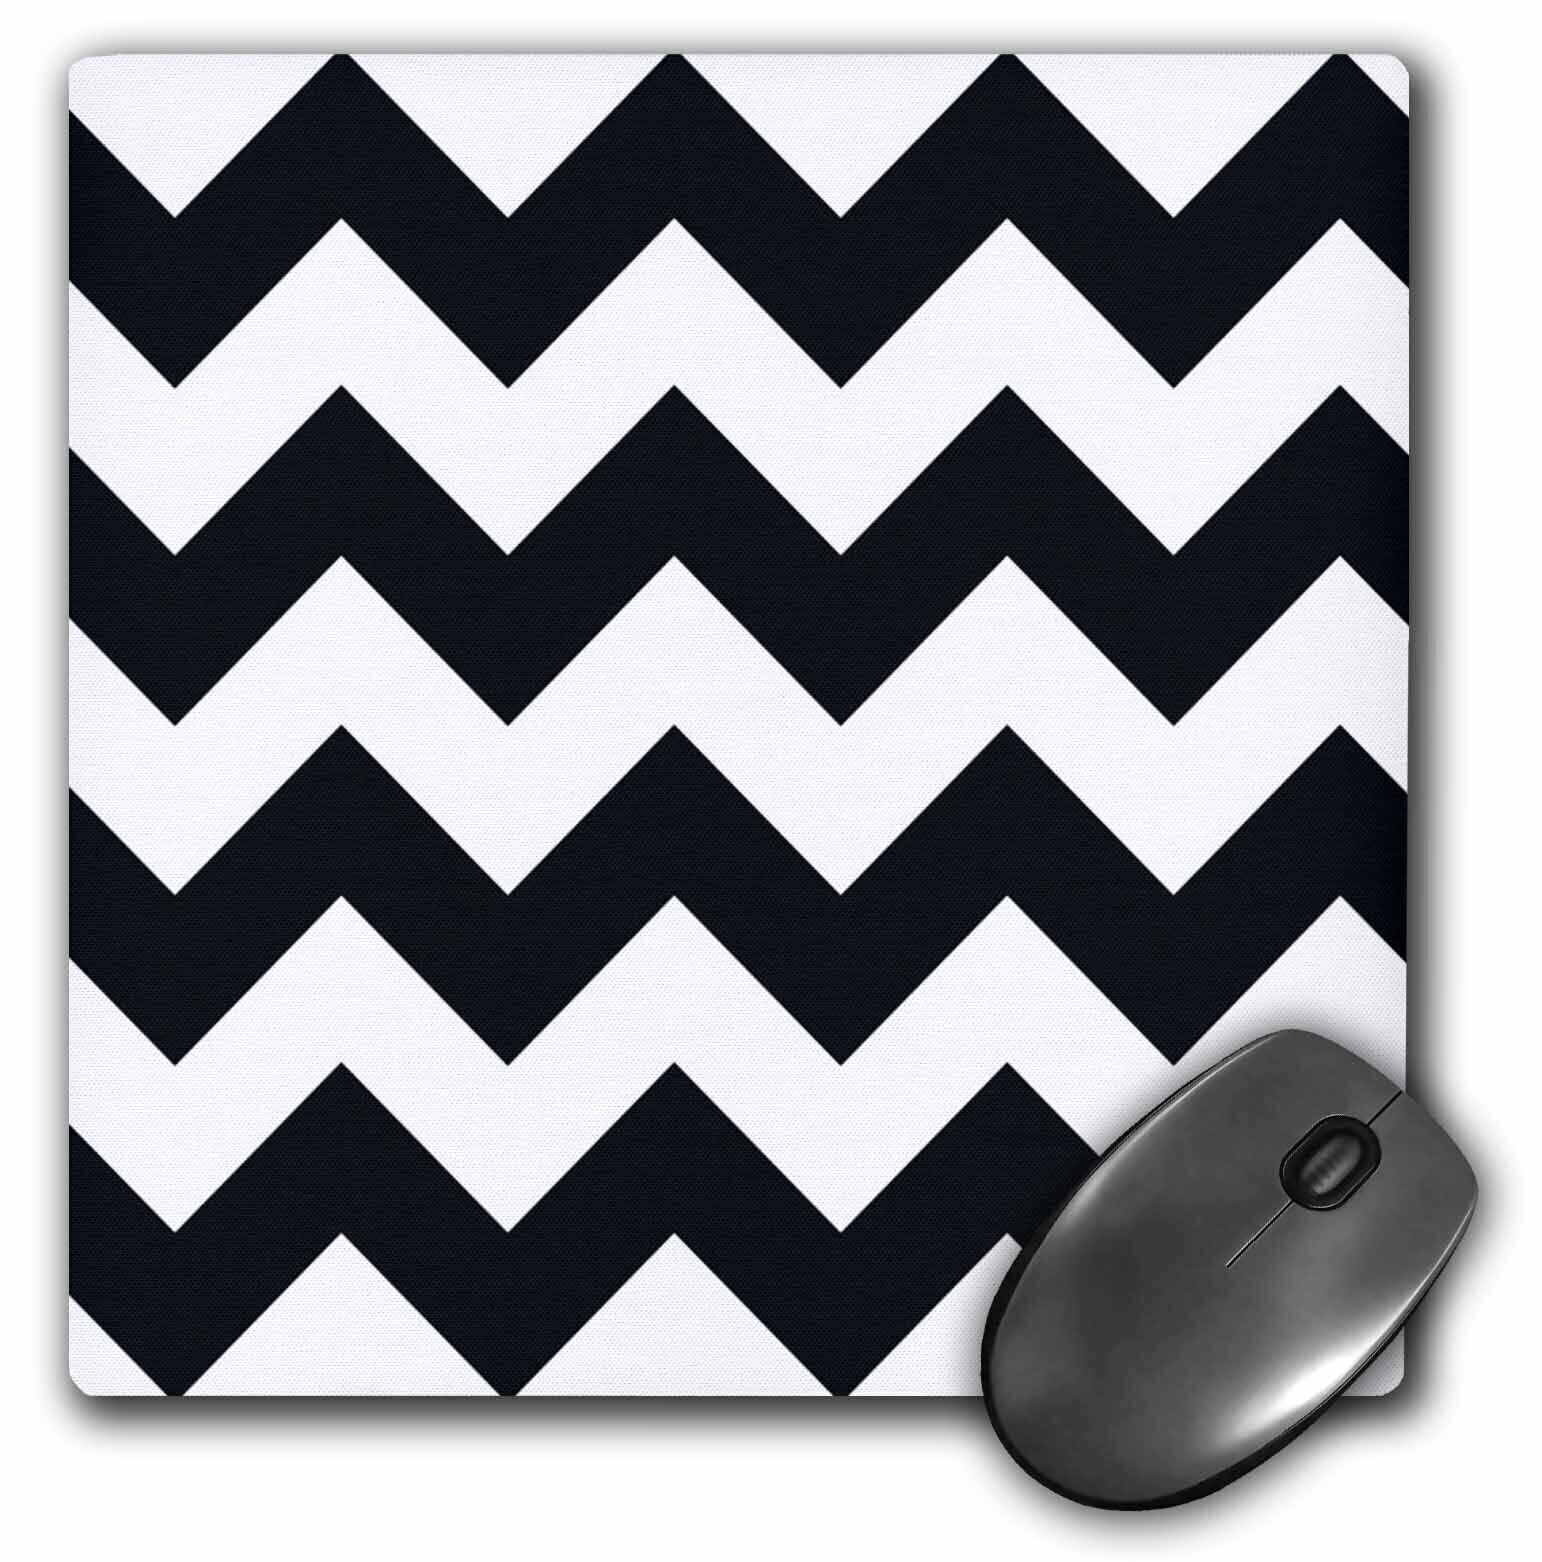 3dRose Black and white chevron pattern MousePad